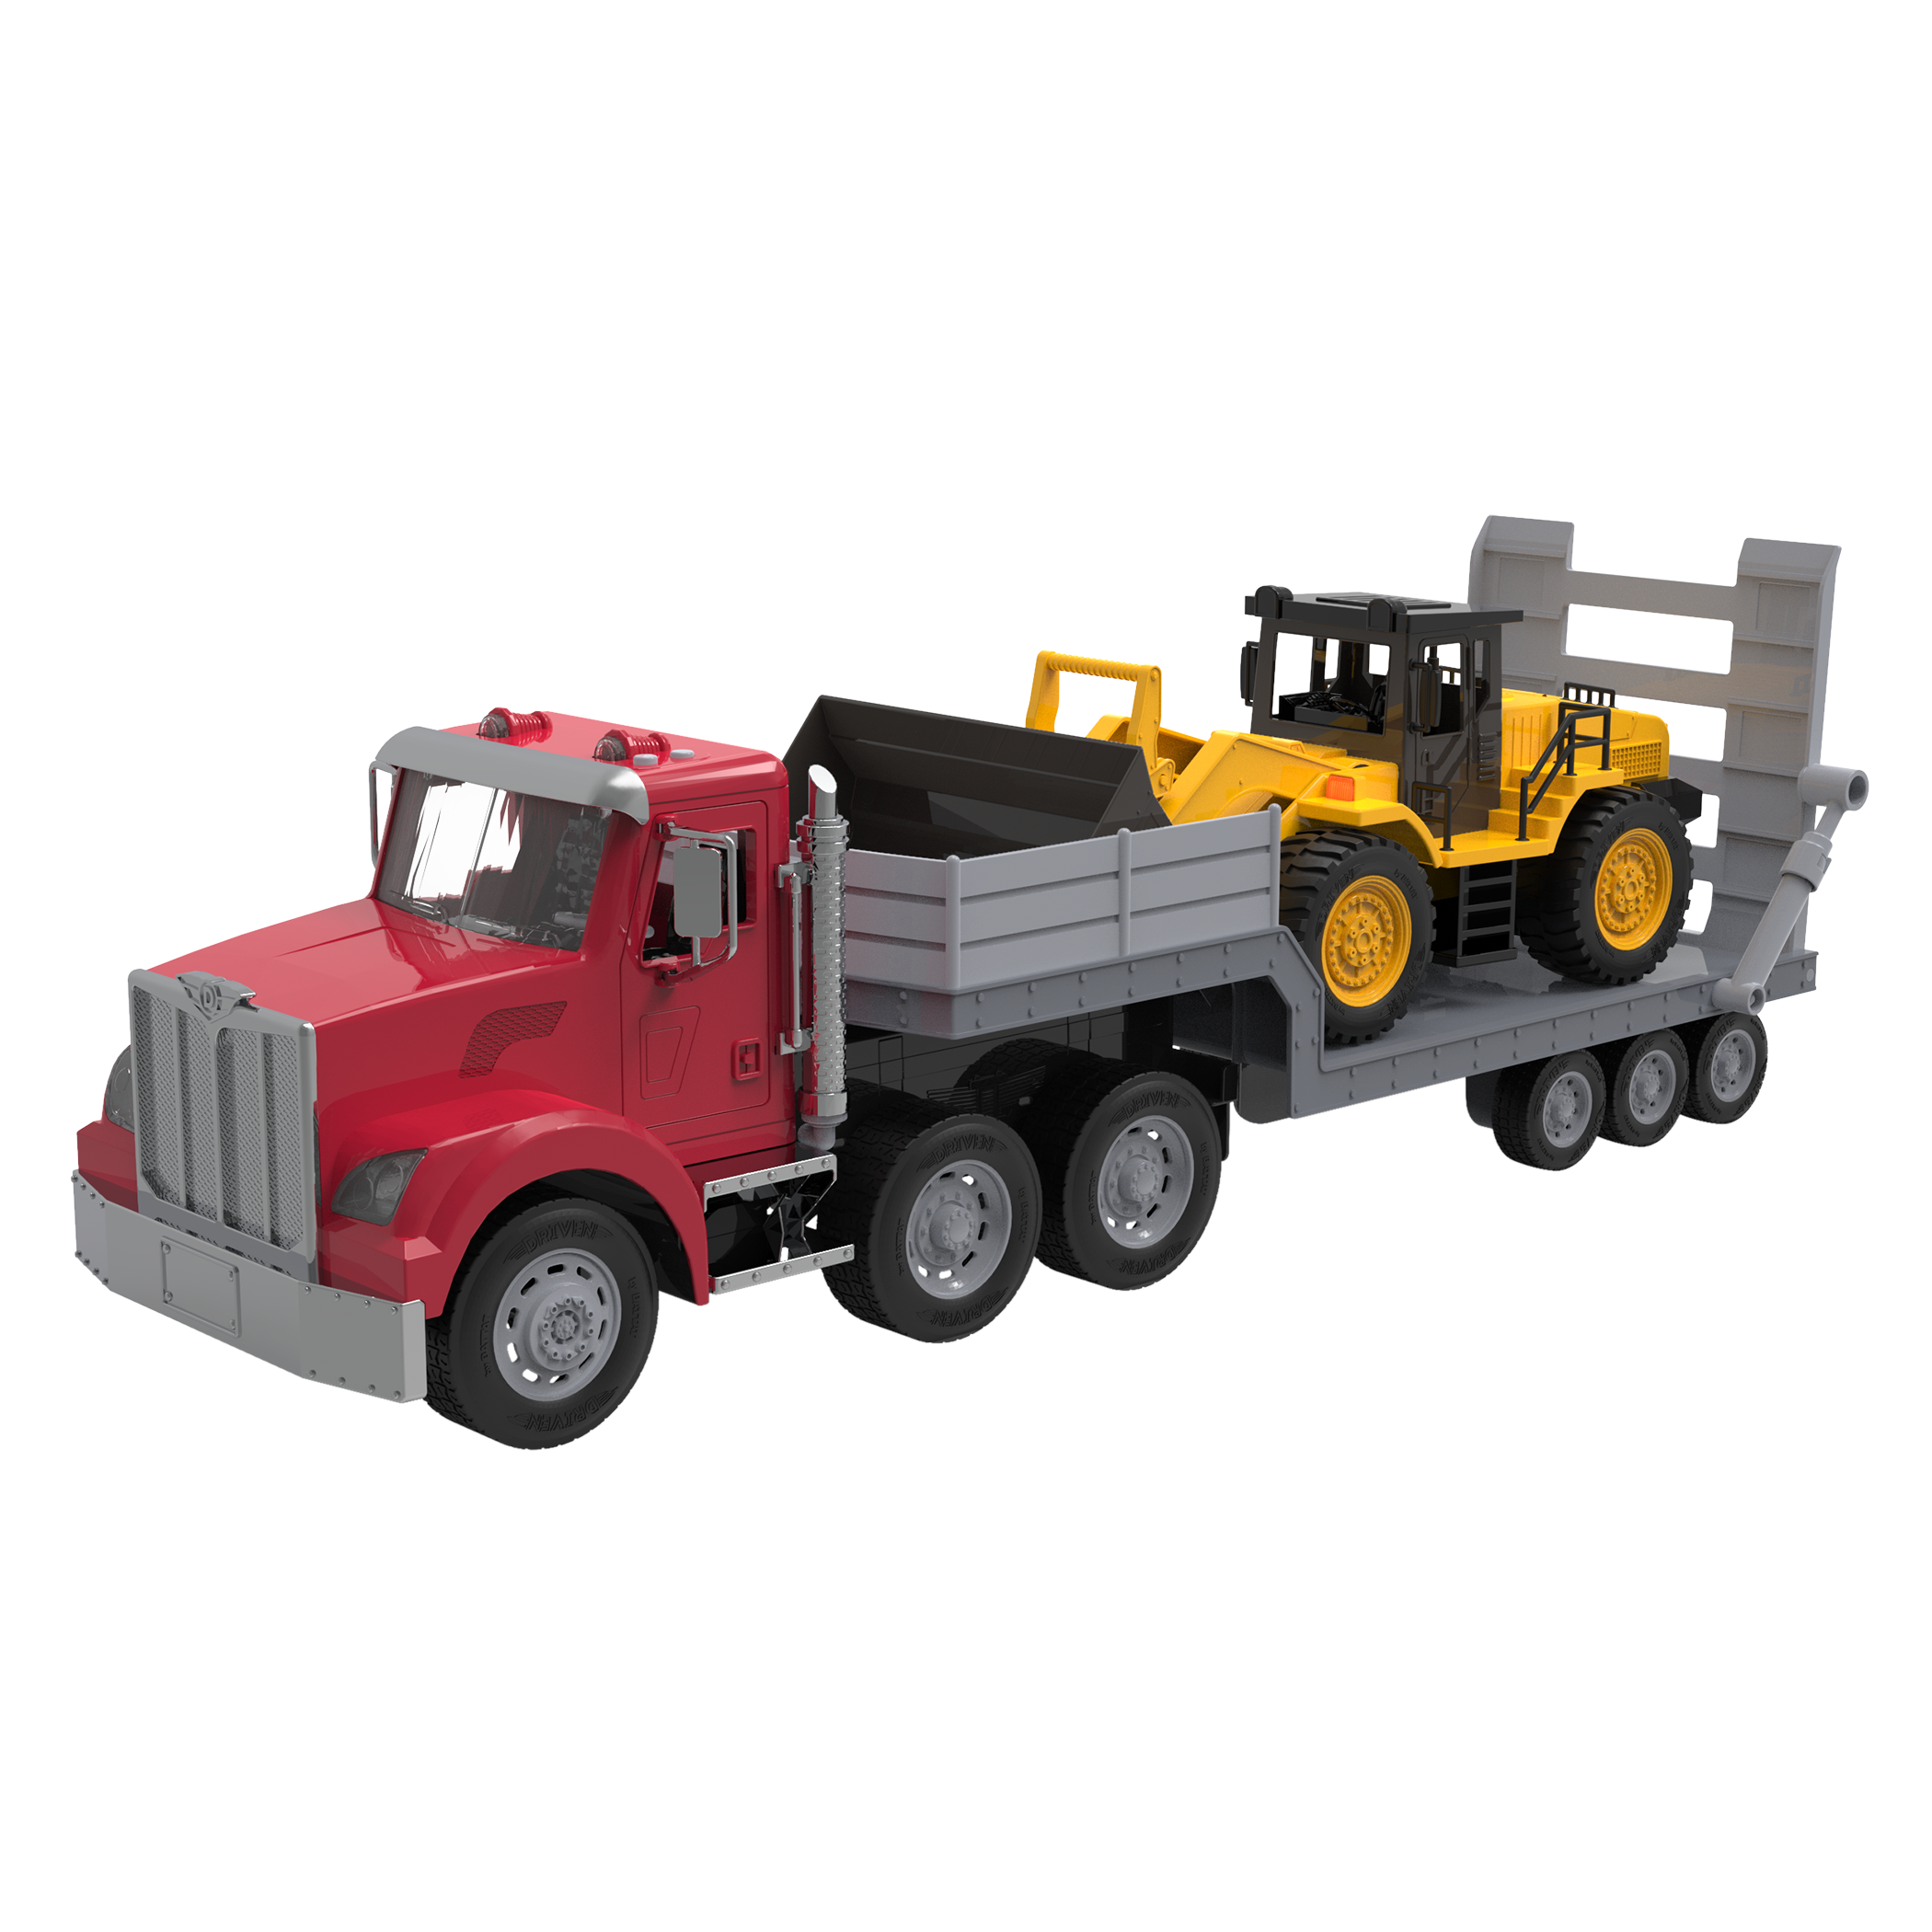 Jumbo Carrier Truck, Toy Truck for Kids